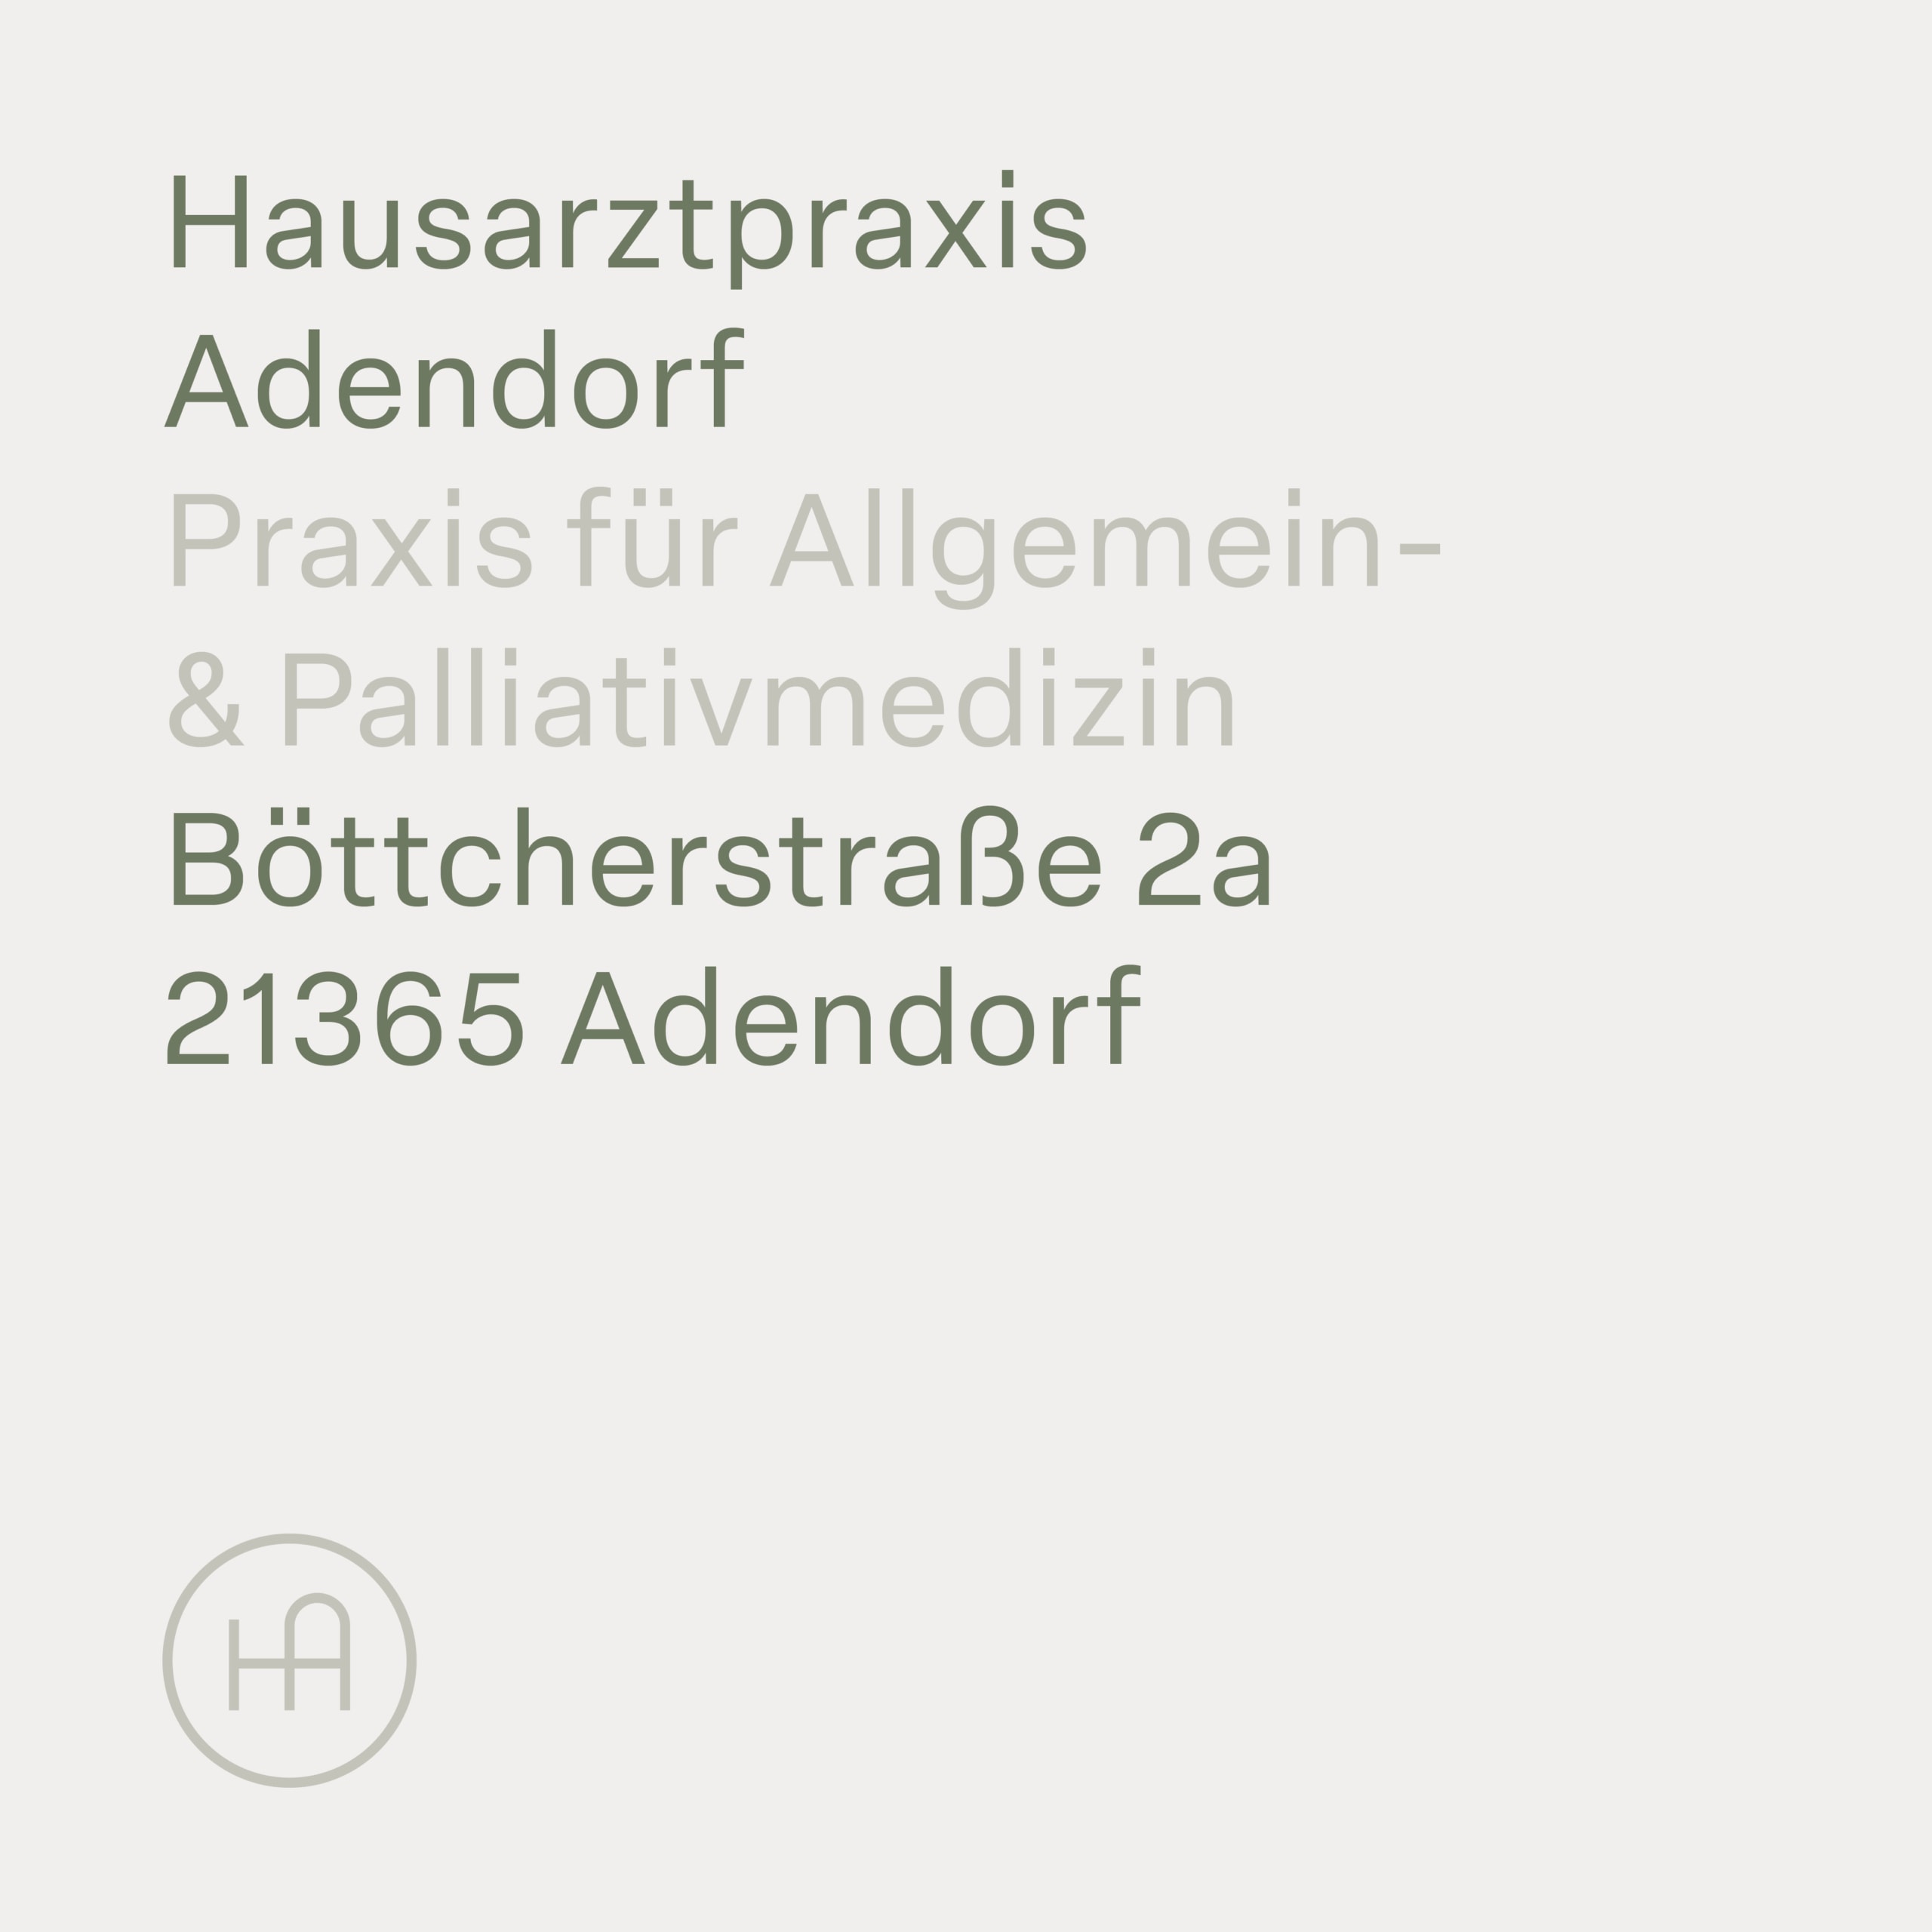 Bureau Johannes Erler – Hausarztpraxis Adendorf